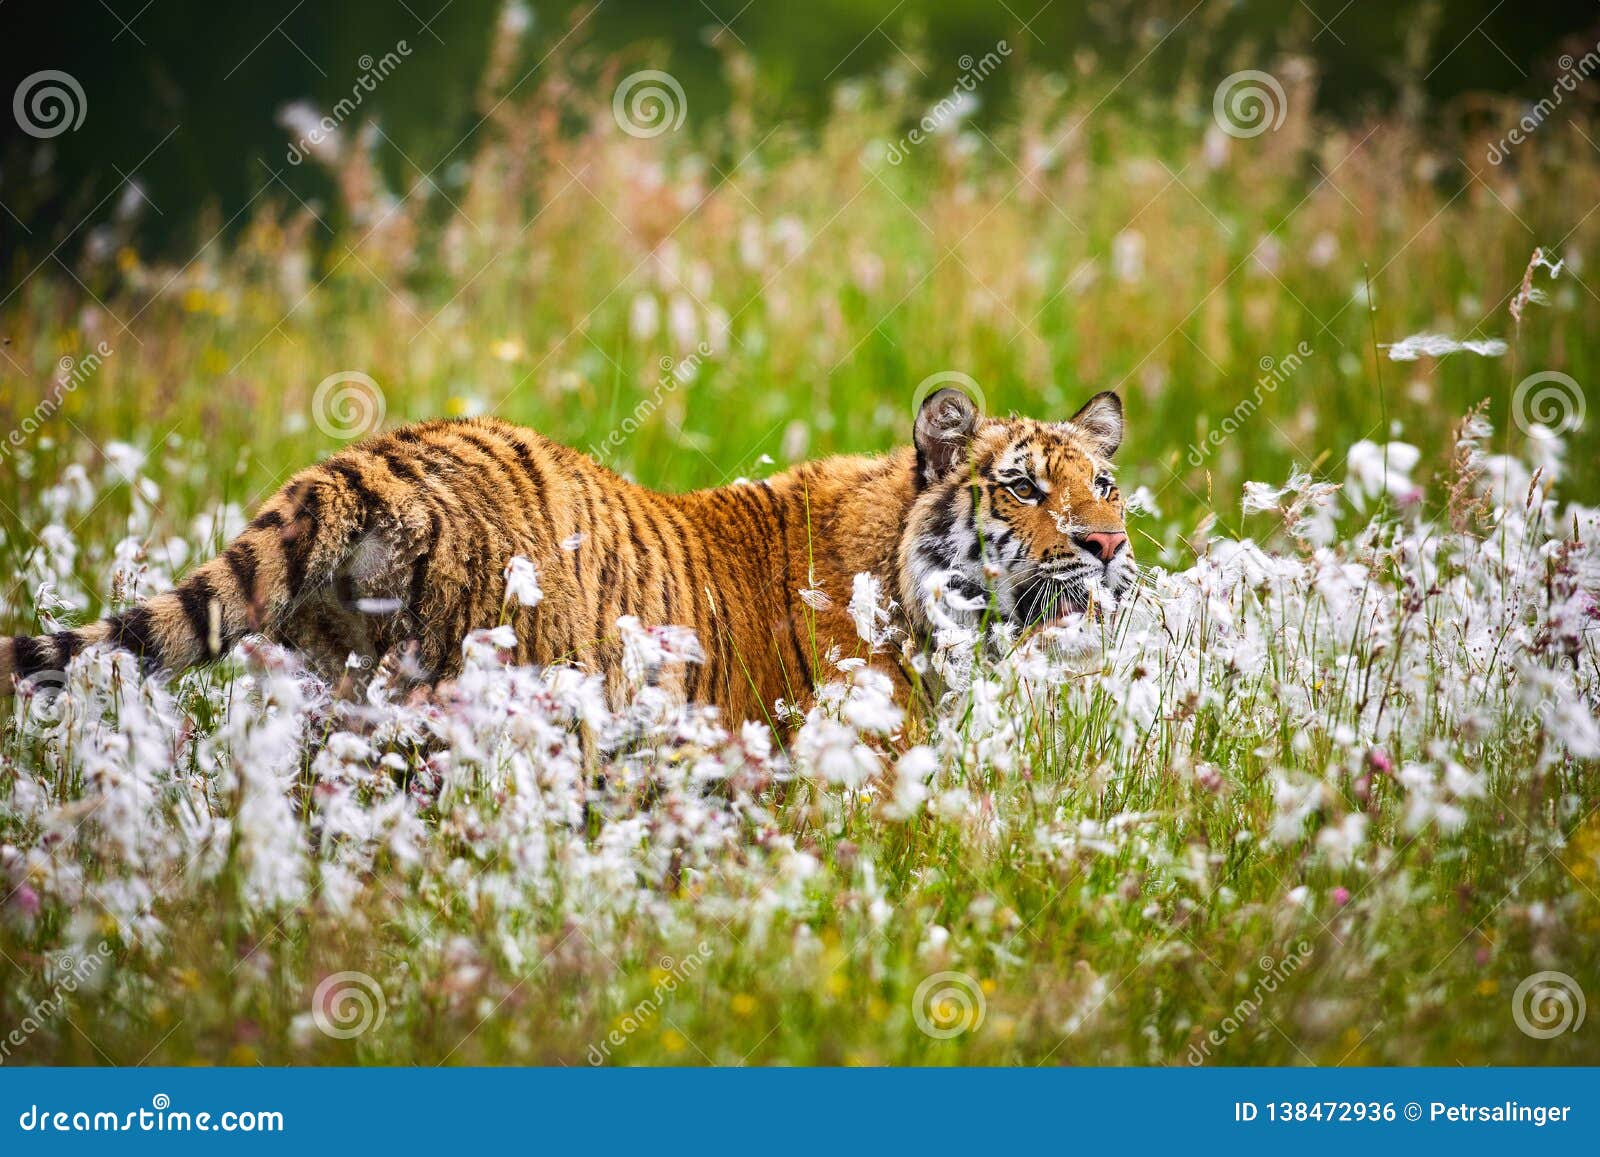 the siberian tiger panthera tigris tigris, or amur tiger panthera tigris altaica in the grassland.